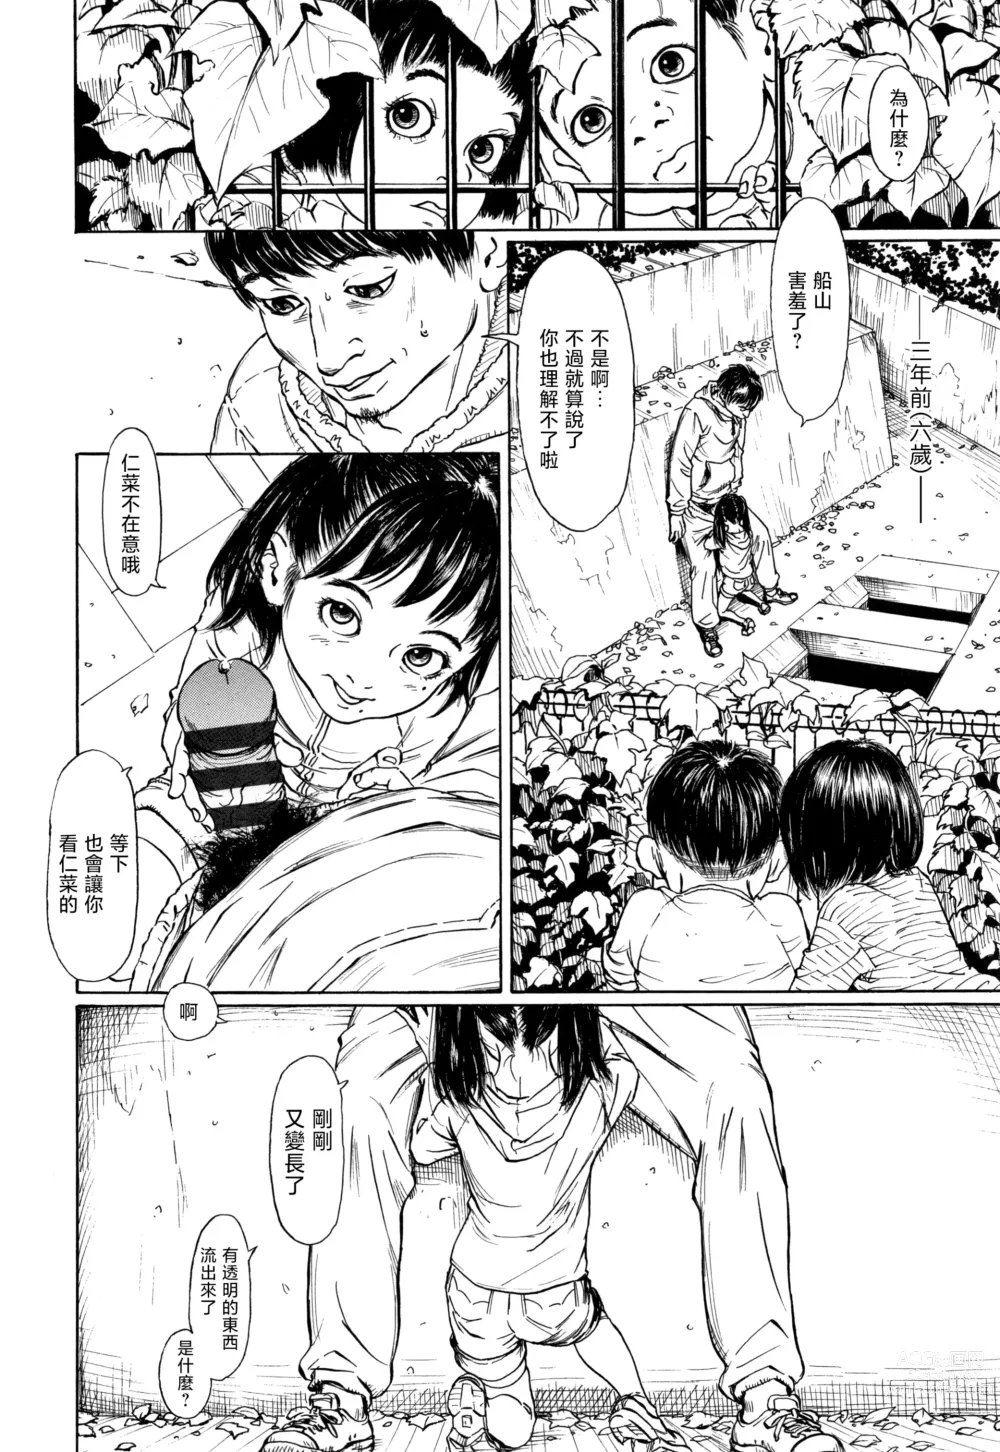 Page 2 of manga Zasikirou no Yurikago